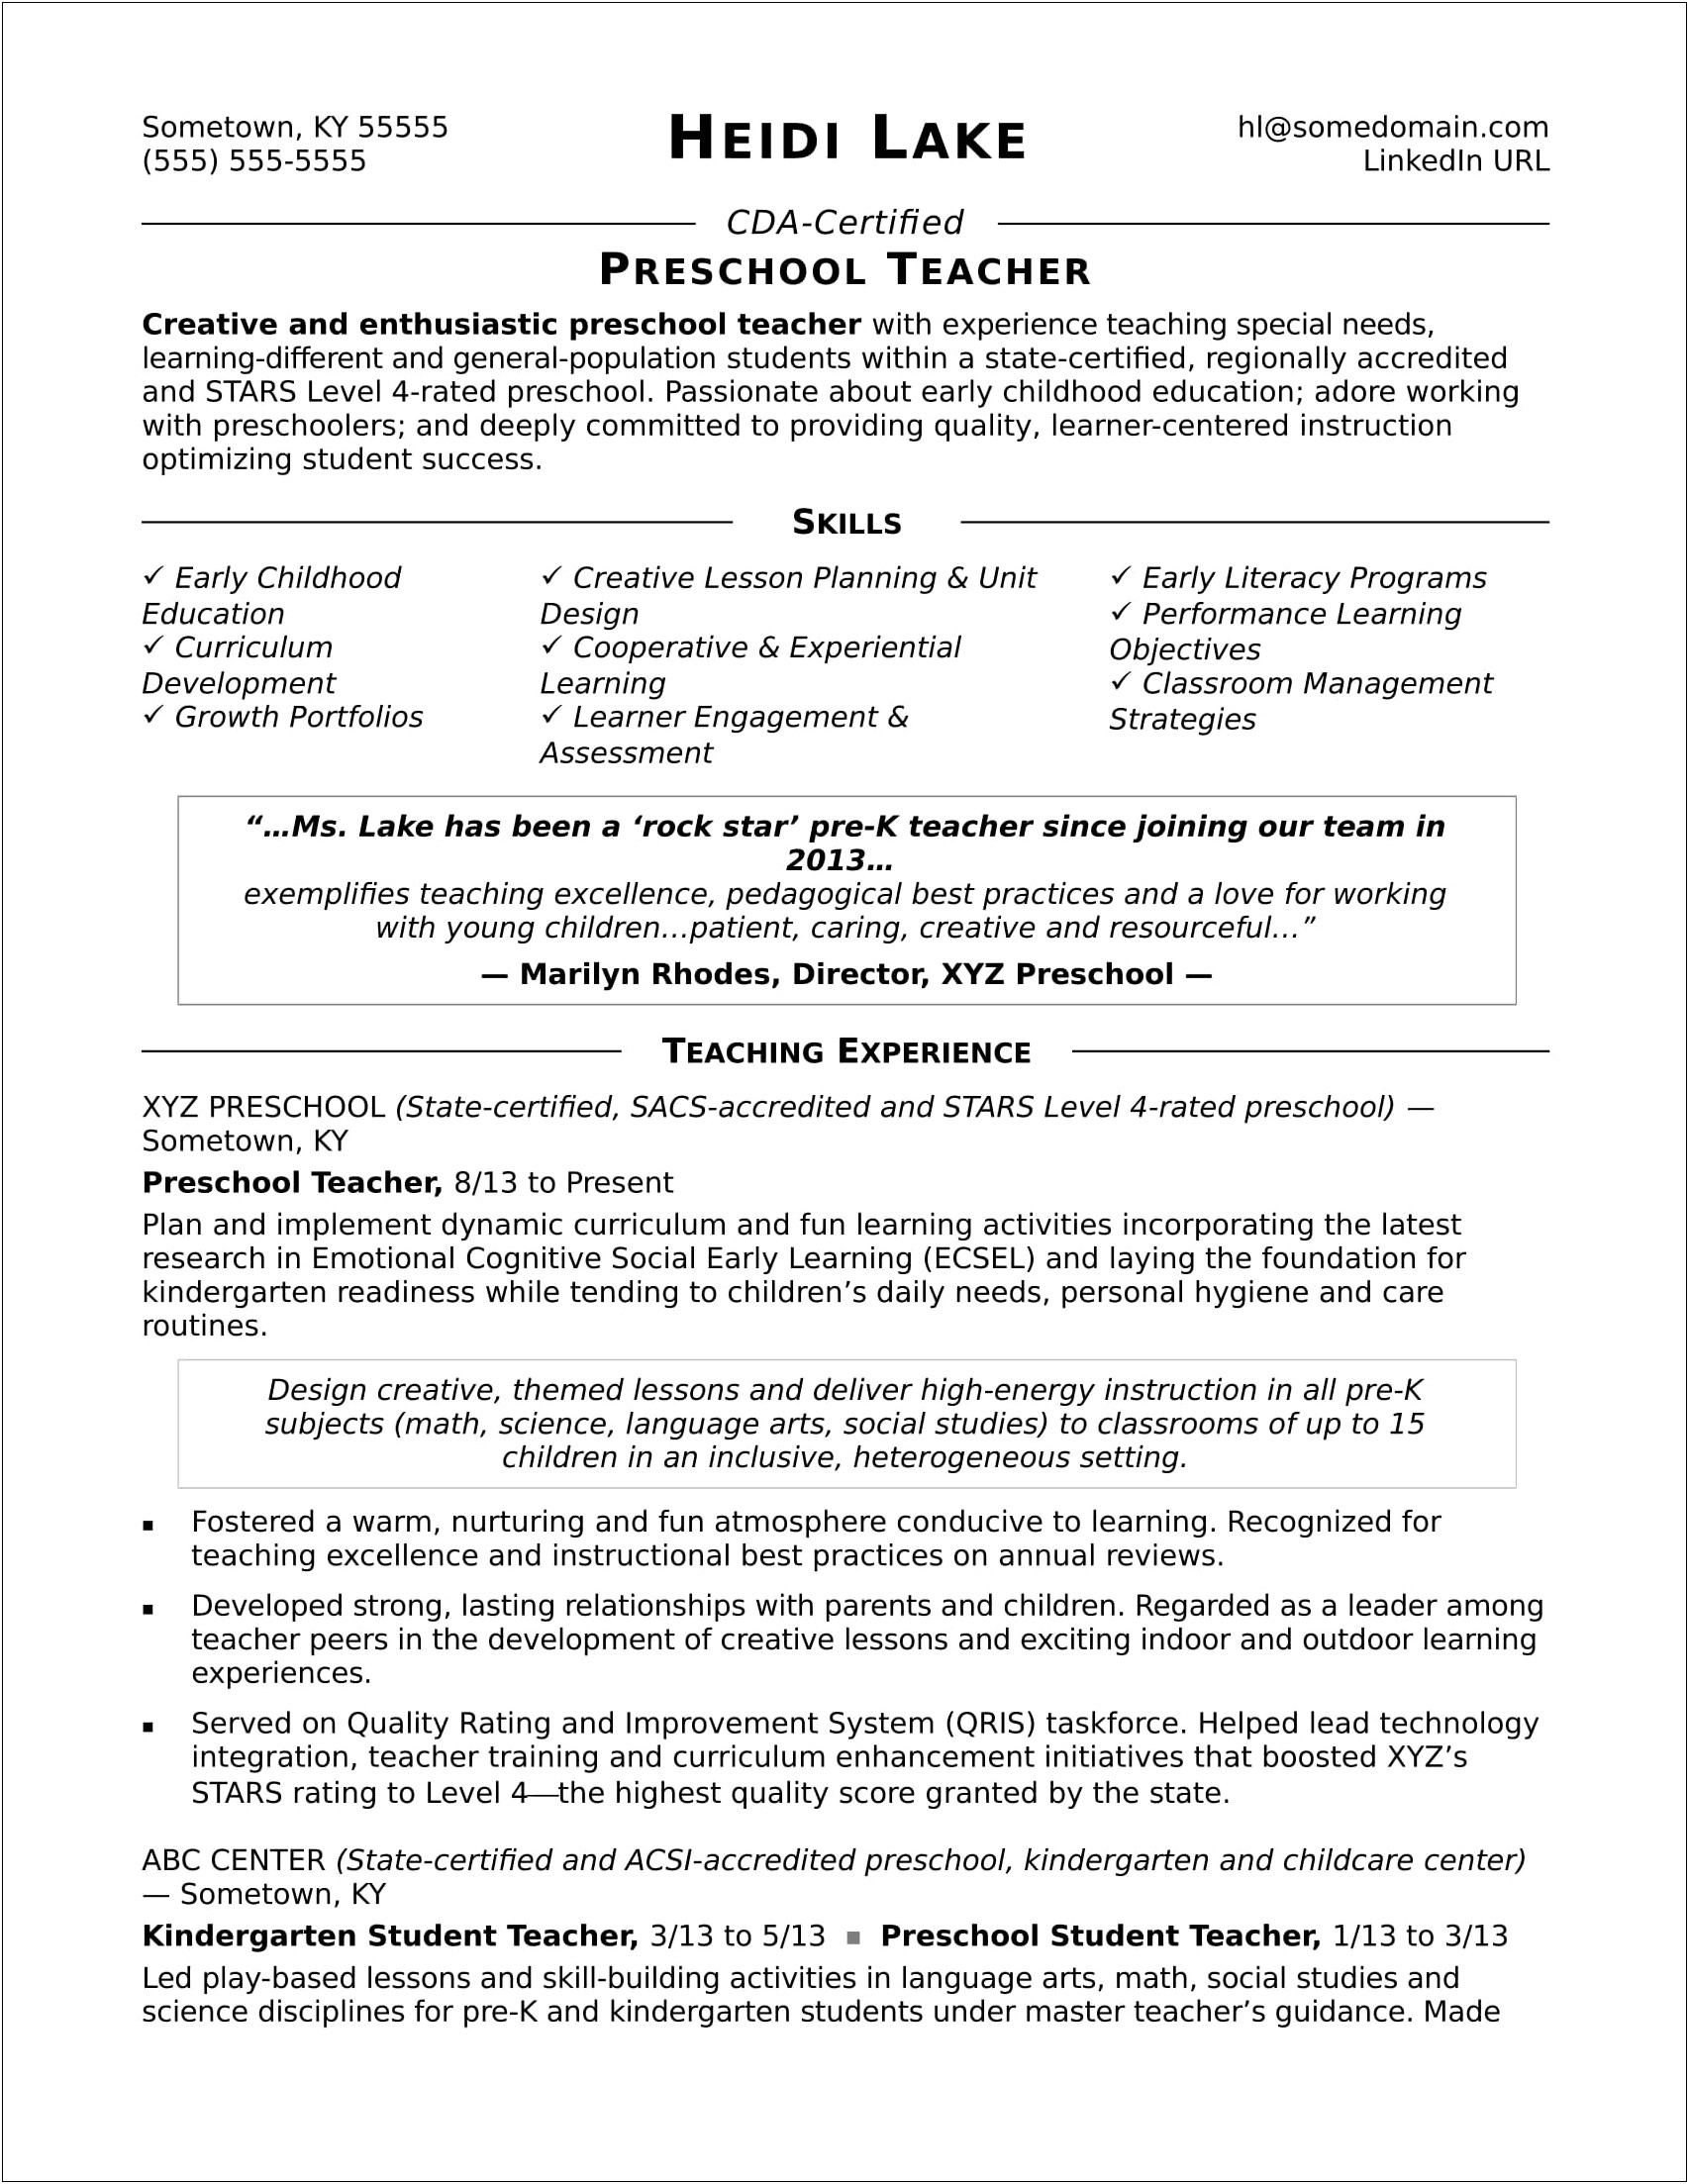 Sample Resume For Preschool Teacher Aide